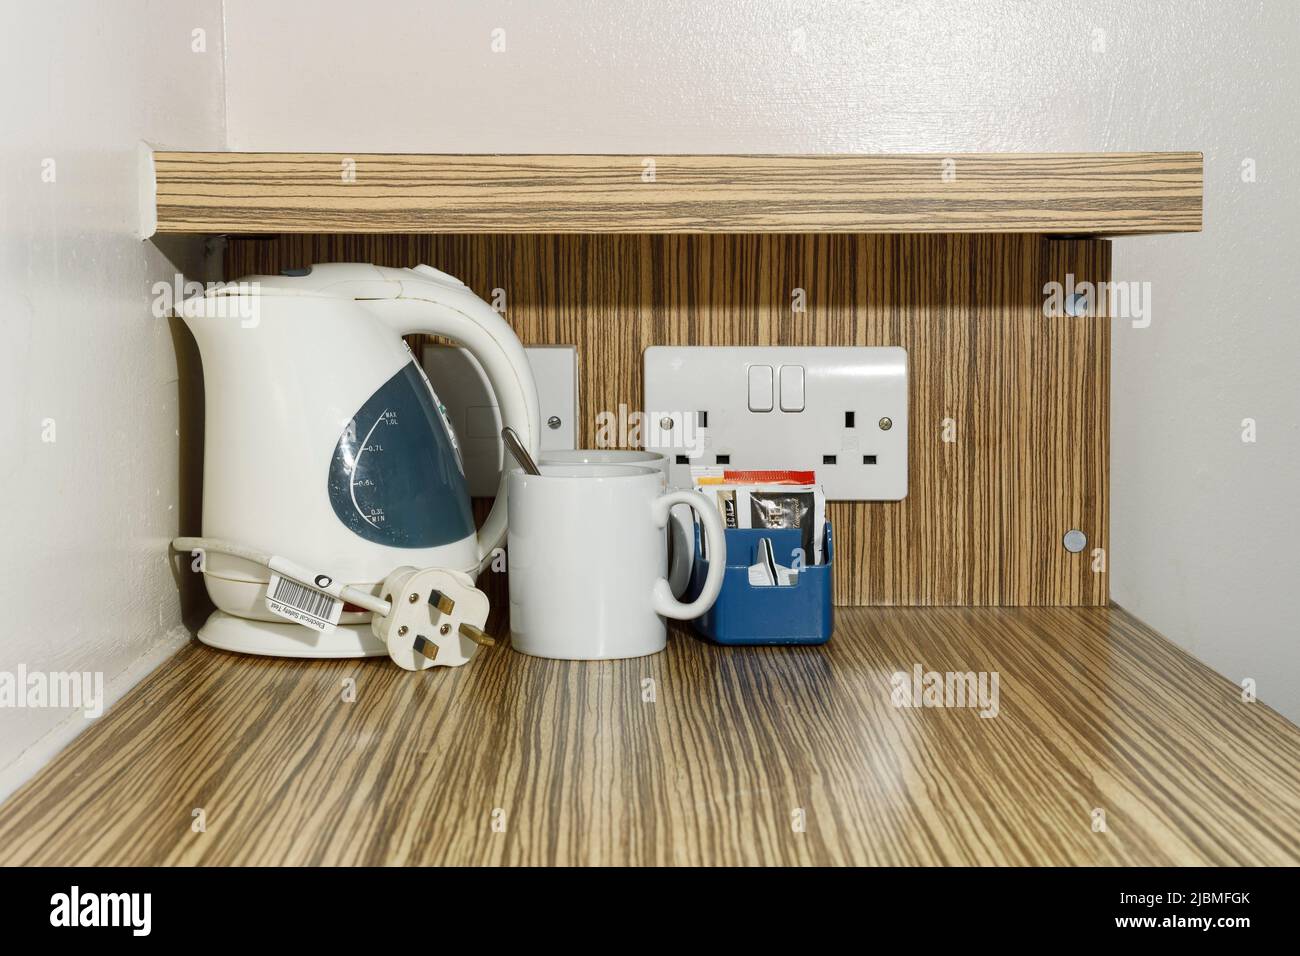 Der Wasserkocher und die Tee- und Kaffeezubereitungsmöglichkeiten in einem Budget-Hotel Stockfoto